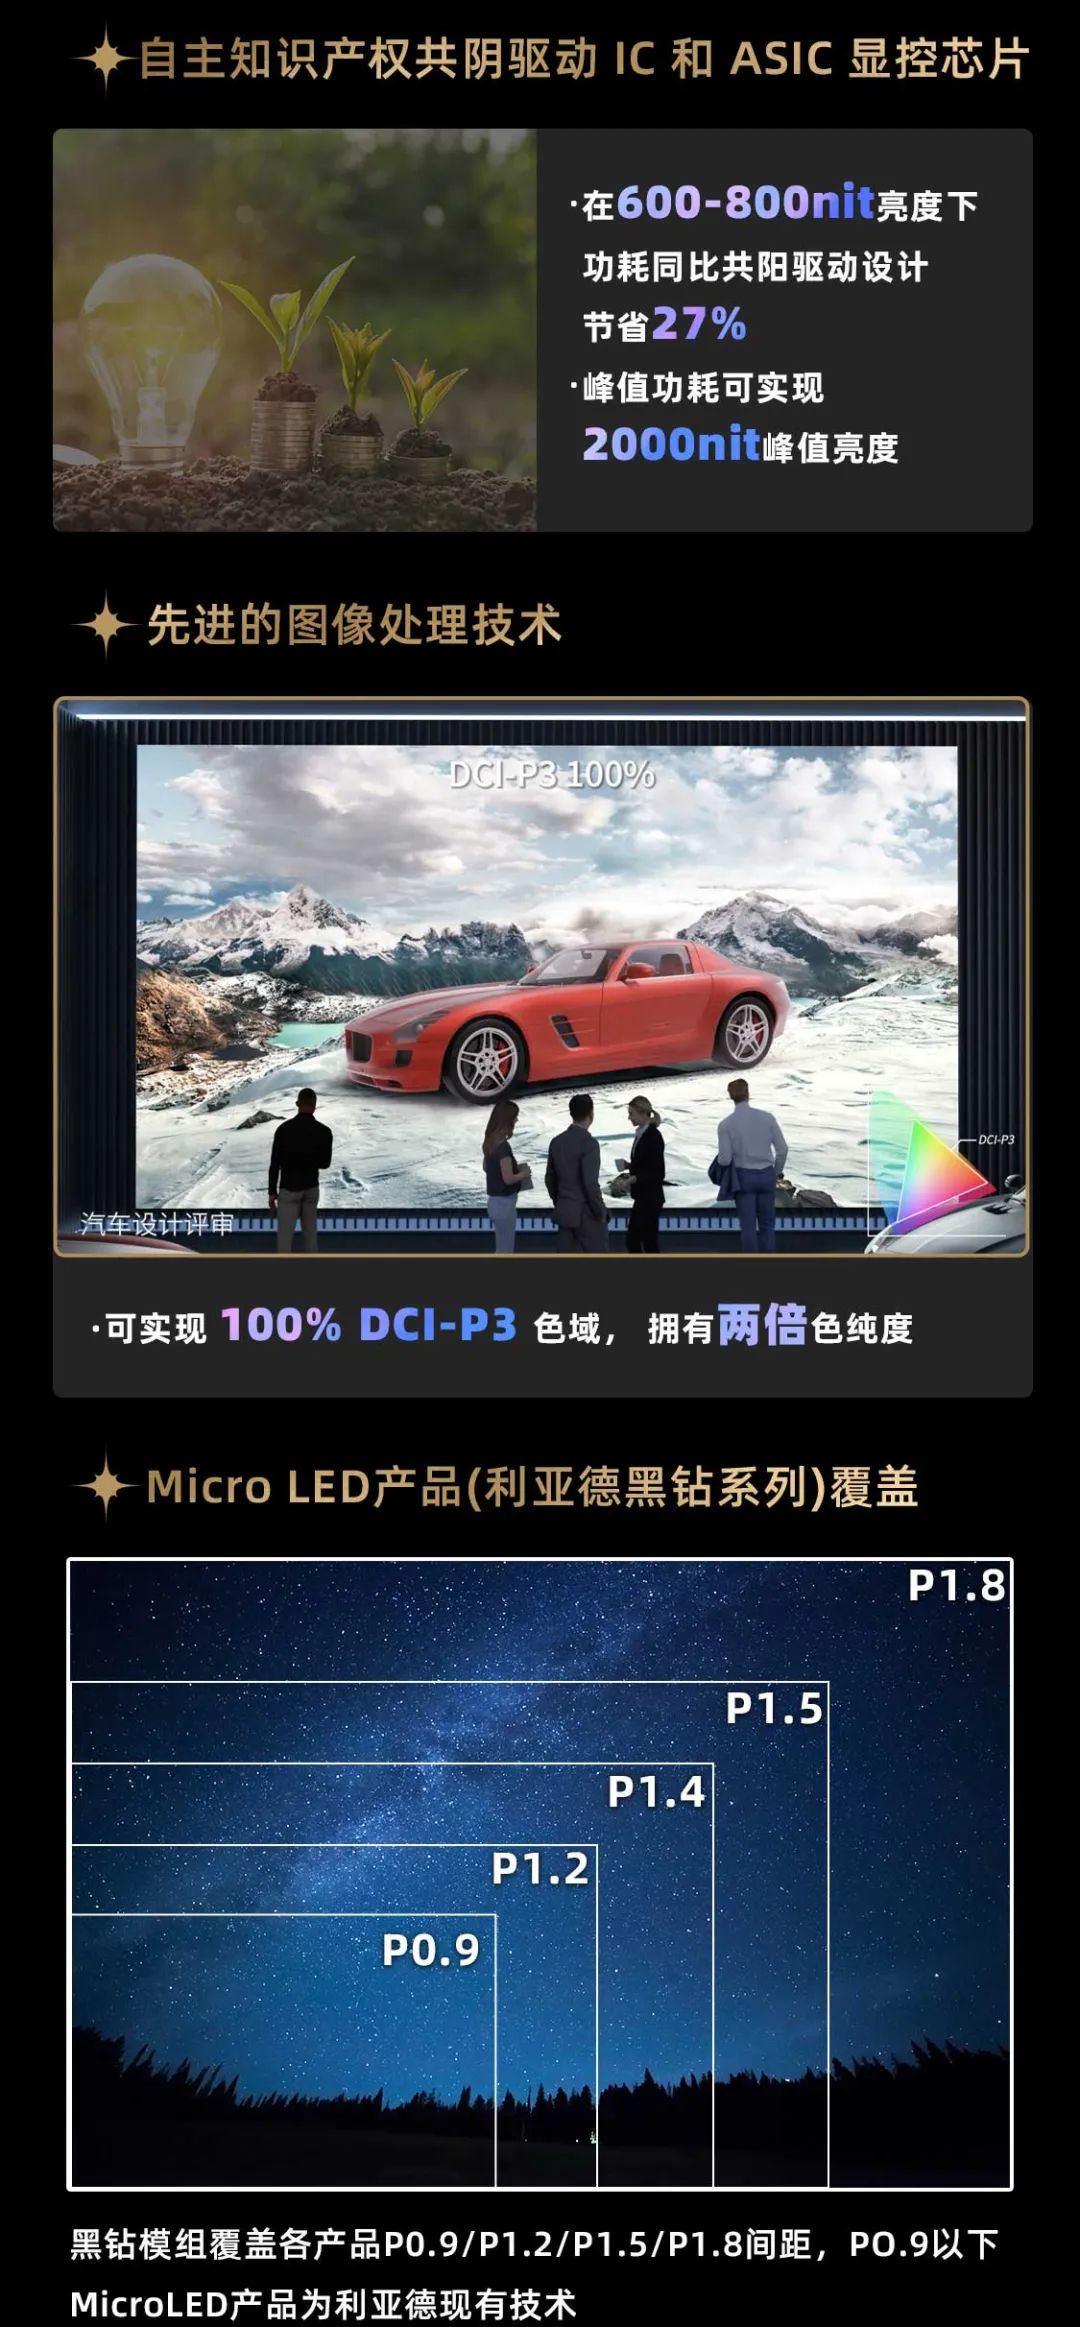 sunbet面向全球发布第二代Micro LED显示技术——sunbet黑钻（Diamond）系列